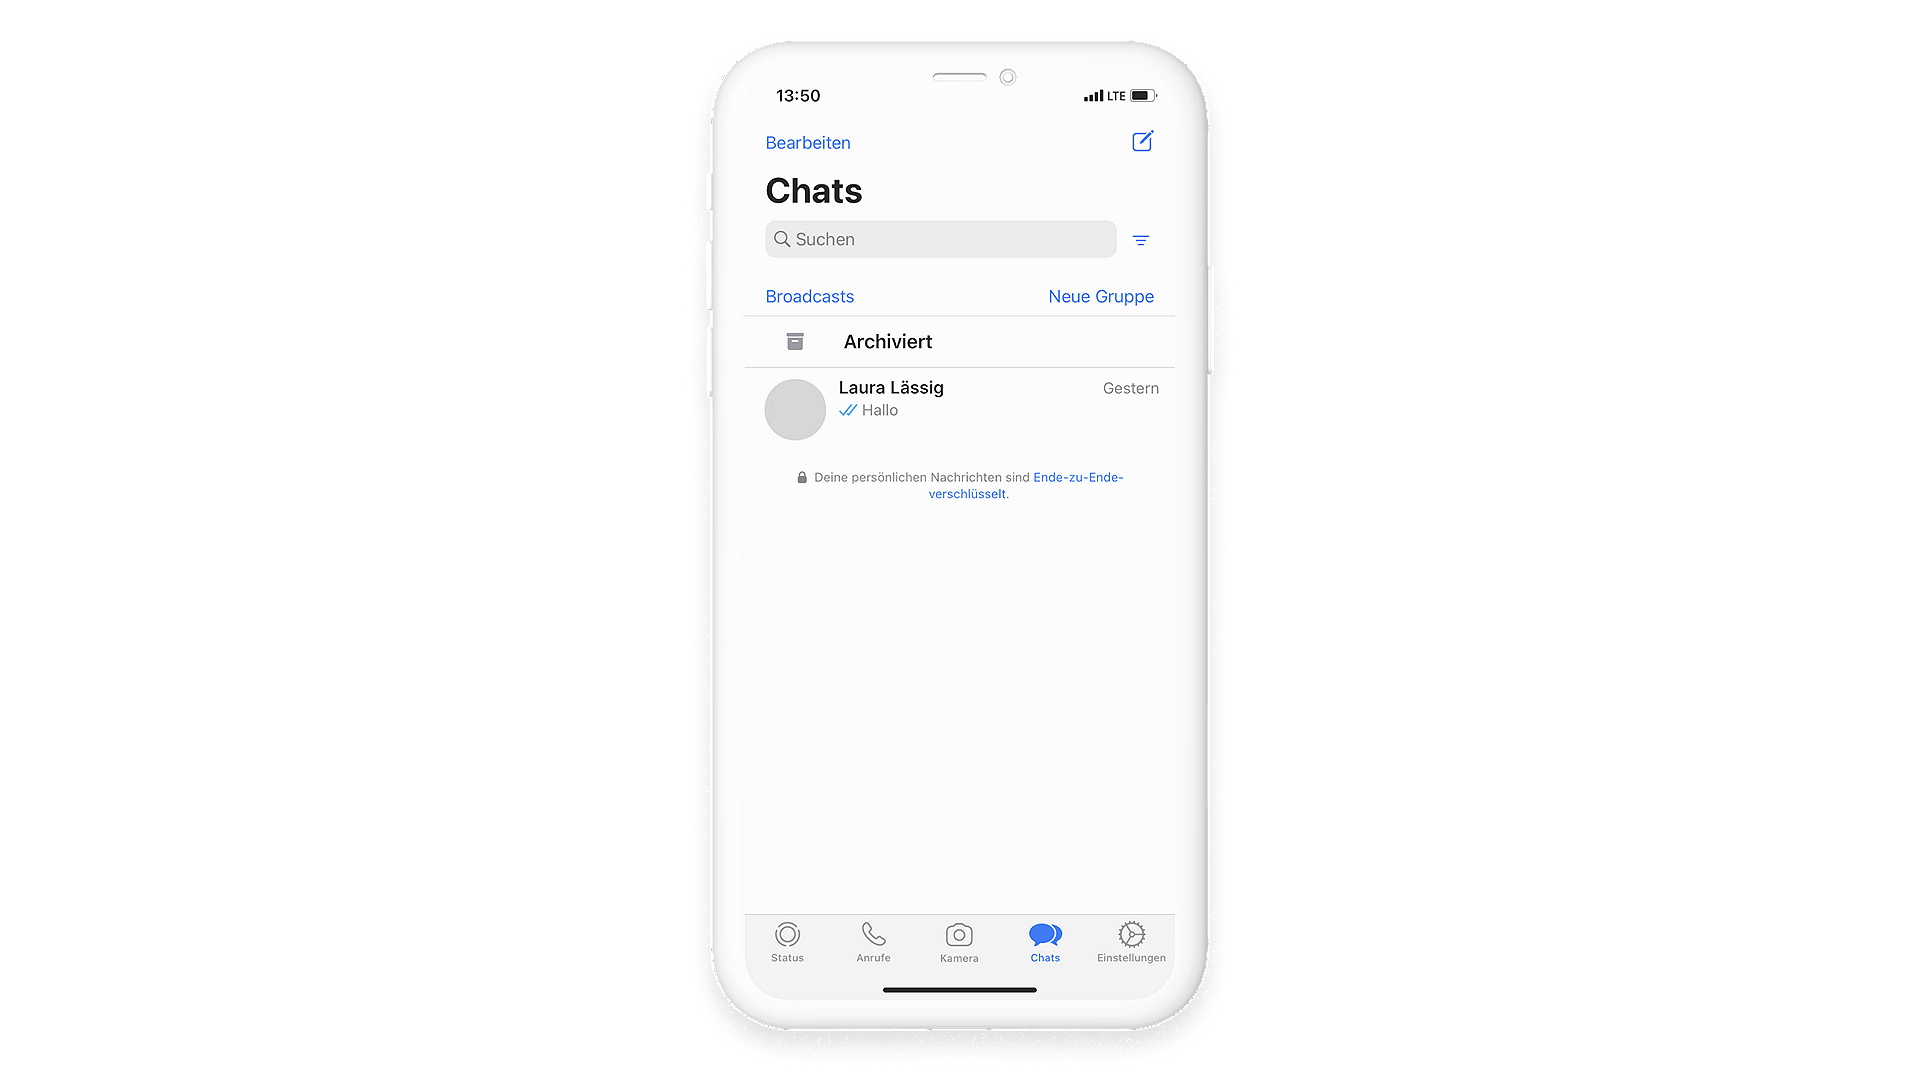 Archivierte Chats können in WhatsApp über das Öffnen der Chat-Übersicht wiederhergestellt werden